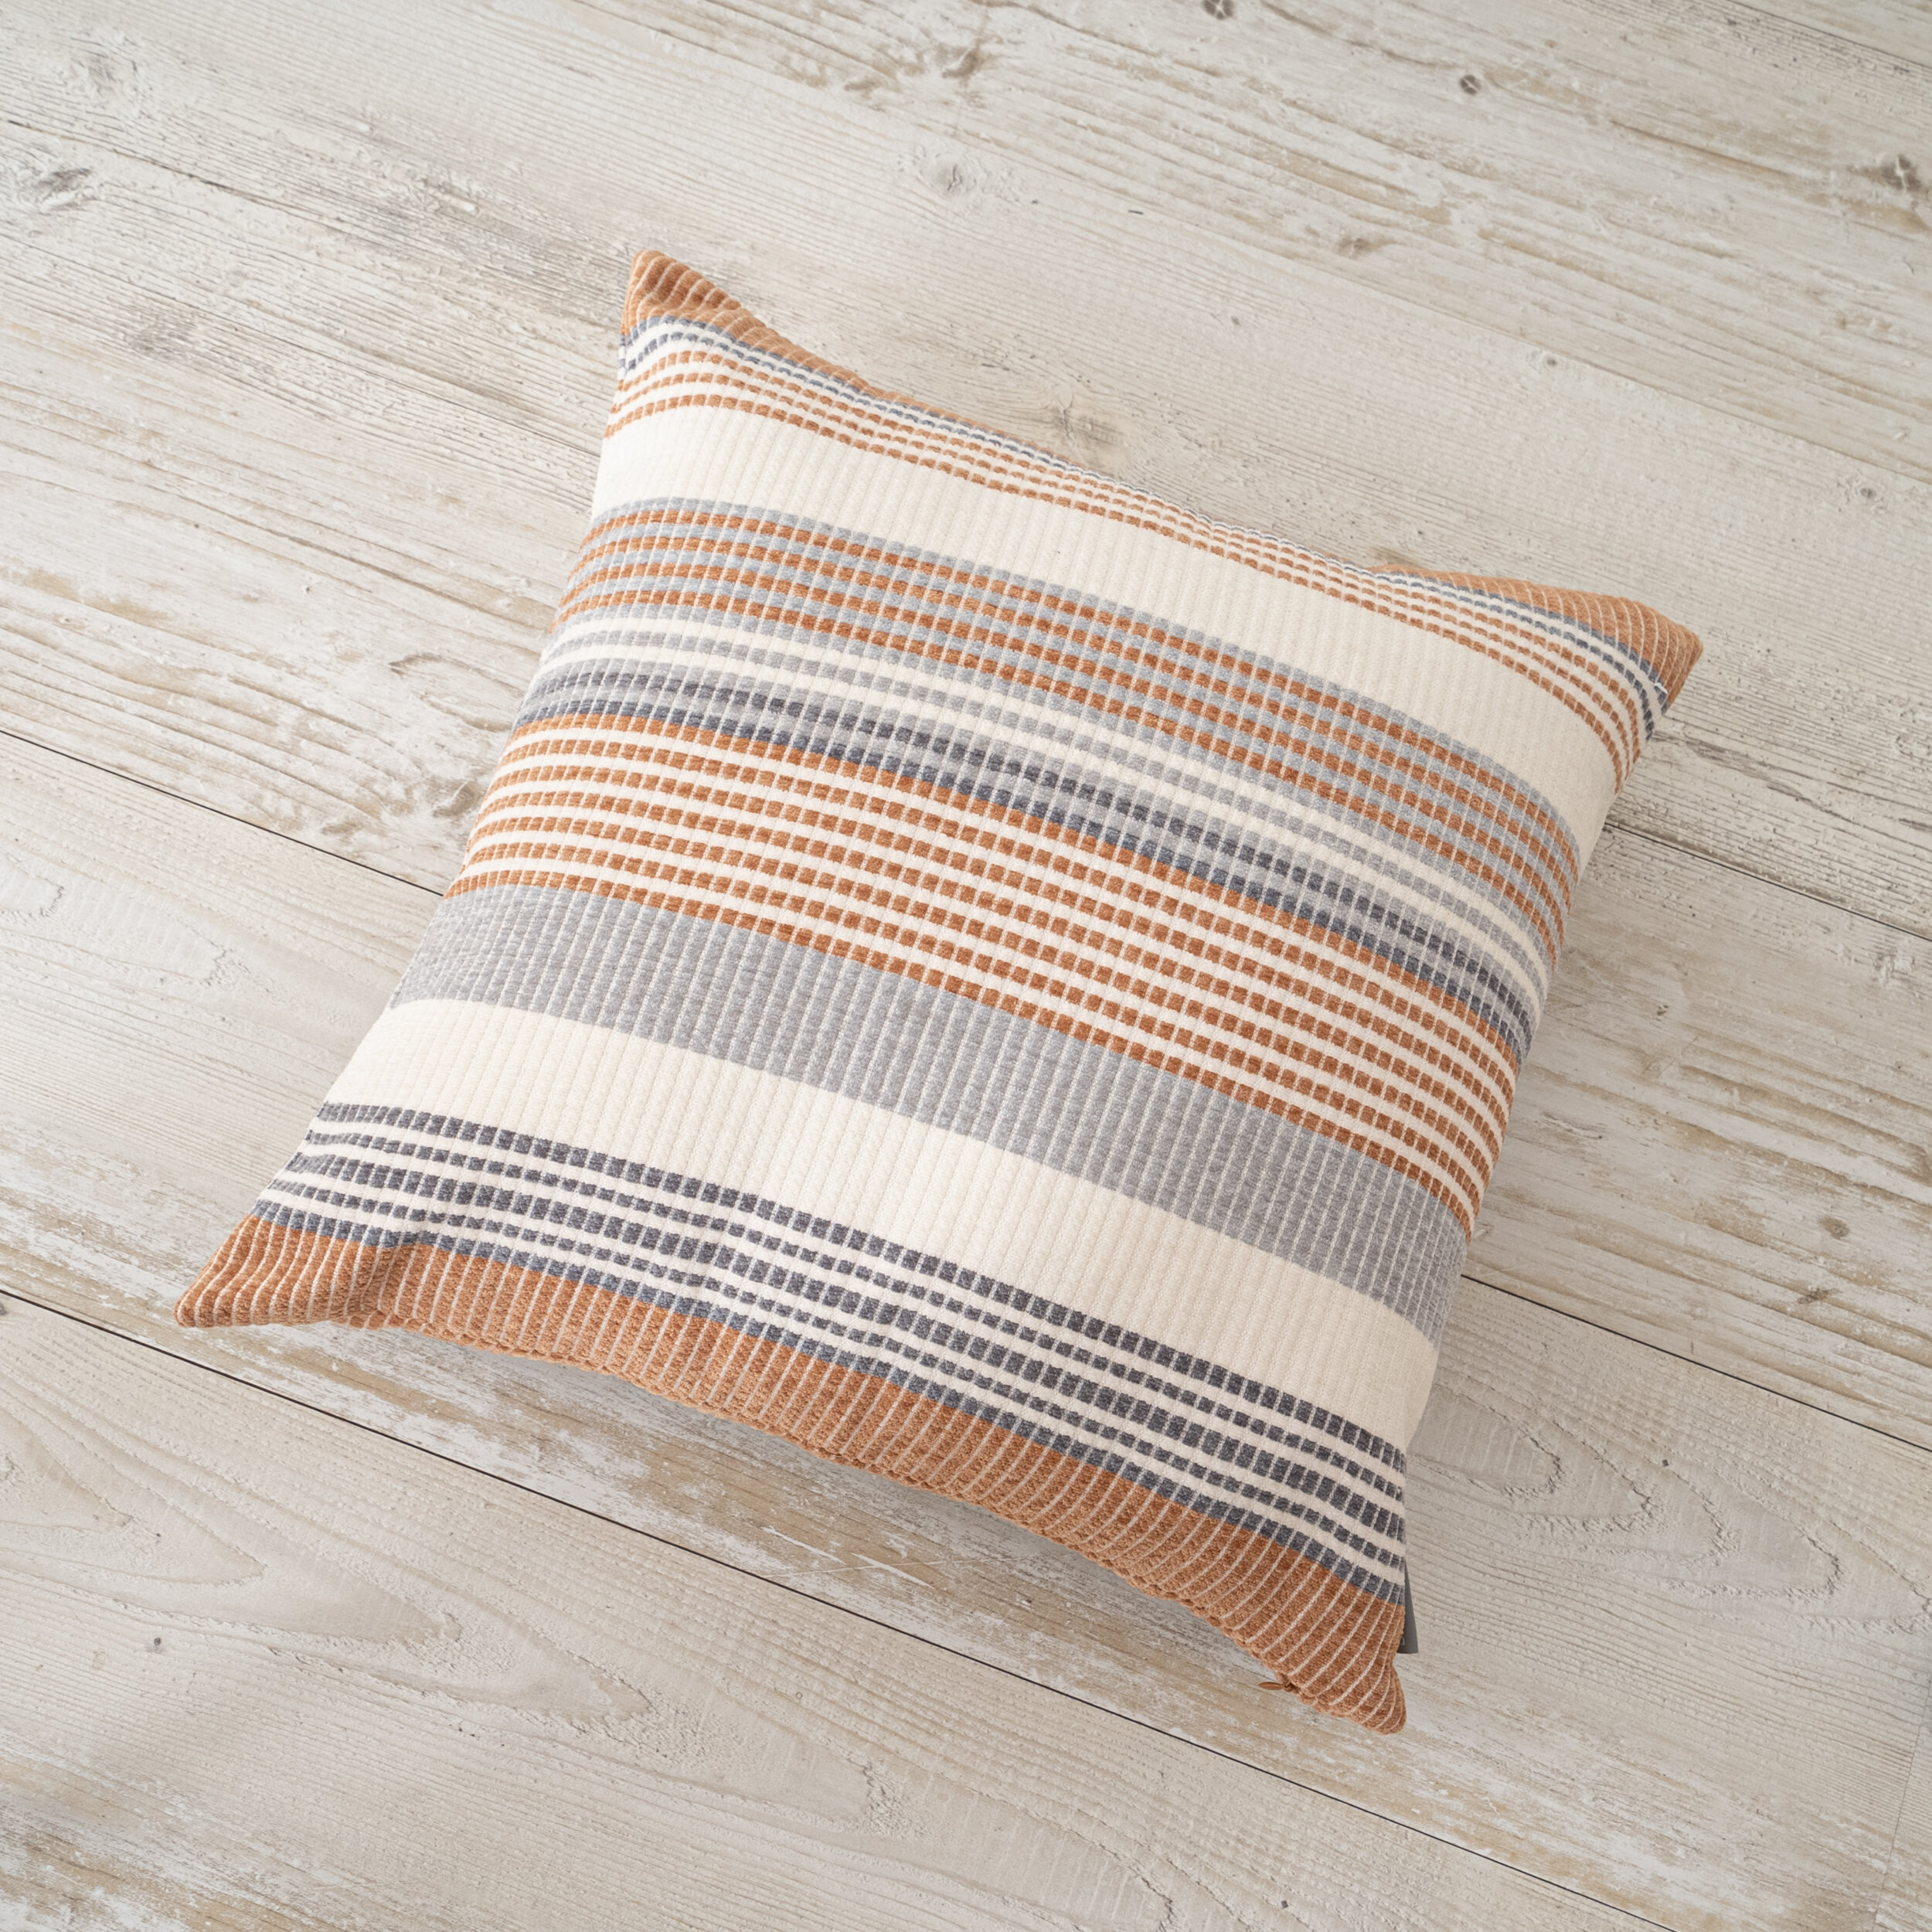 Buy Indoor/Outdoor Sunbrella Shore Linen - 18x18 Vertical Stripes Throw  Pillow